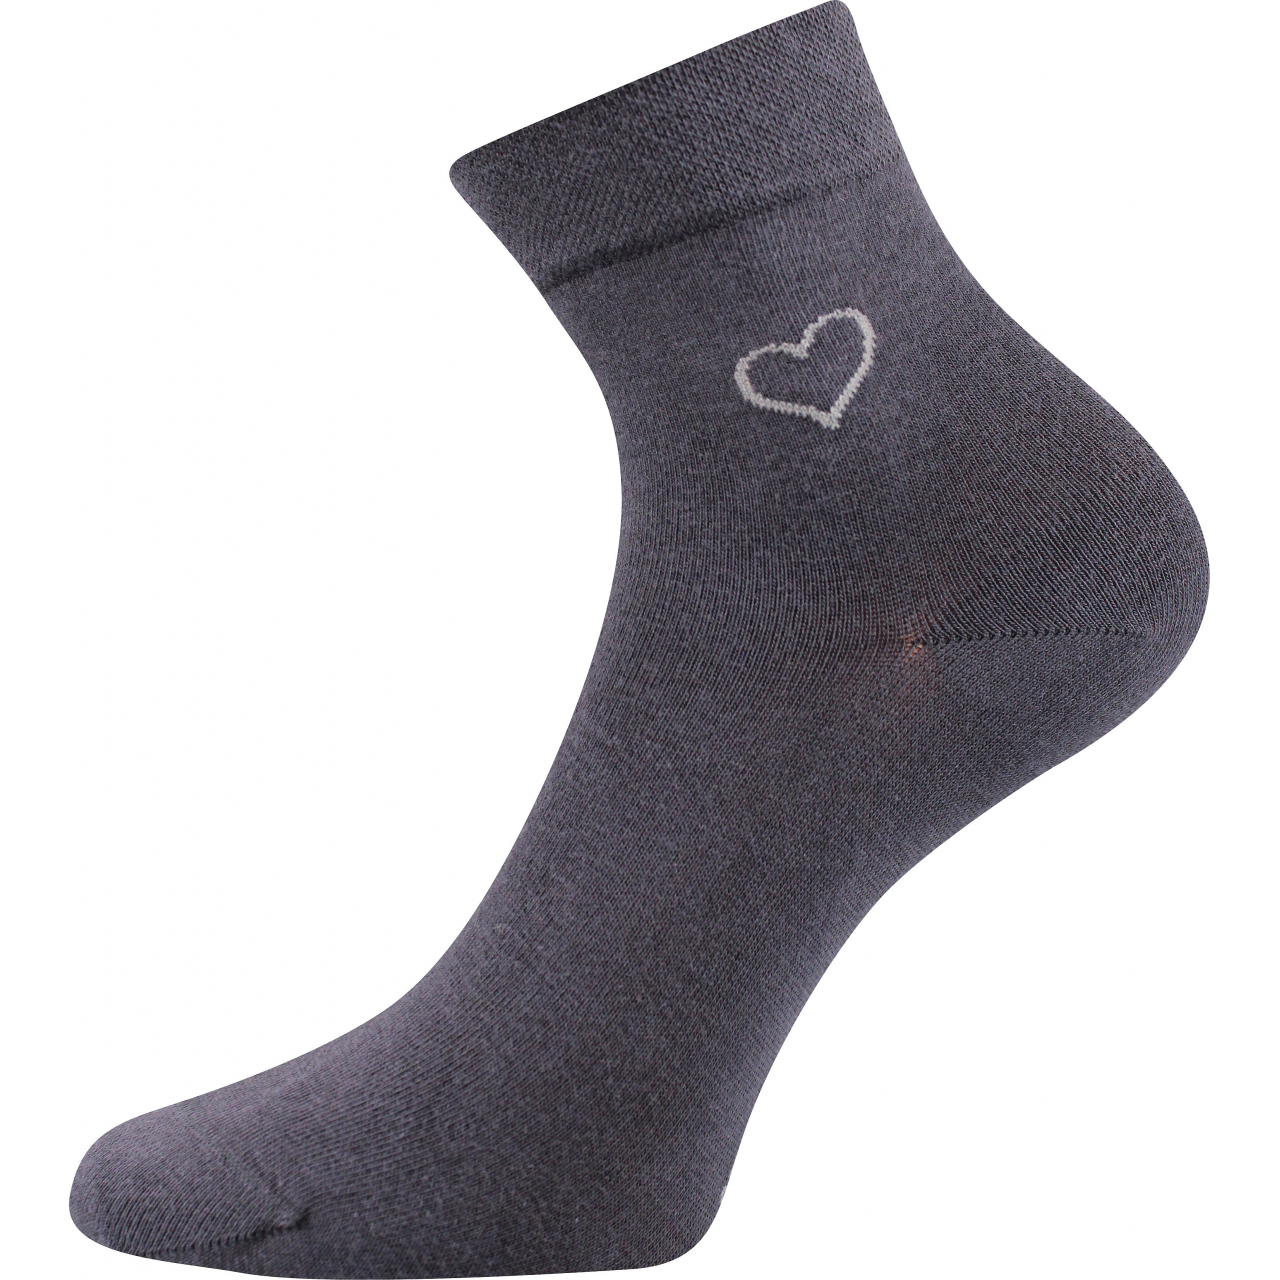 Ponožky elegantní dámské Lonka Filiona - tmavě šedé, 39-42